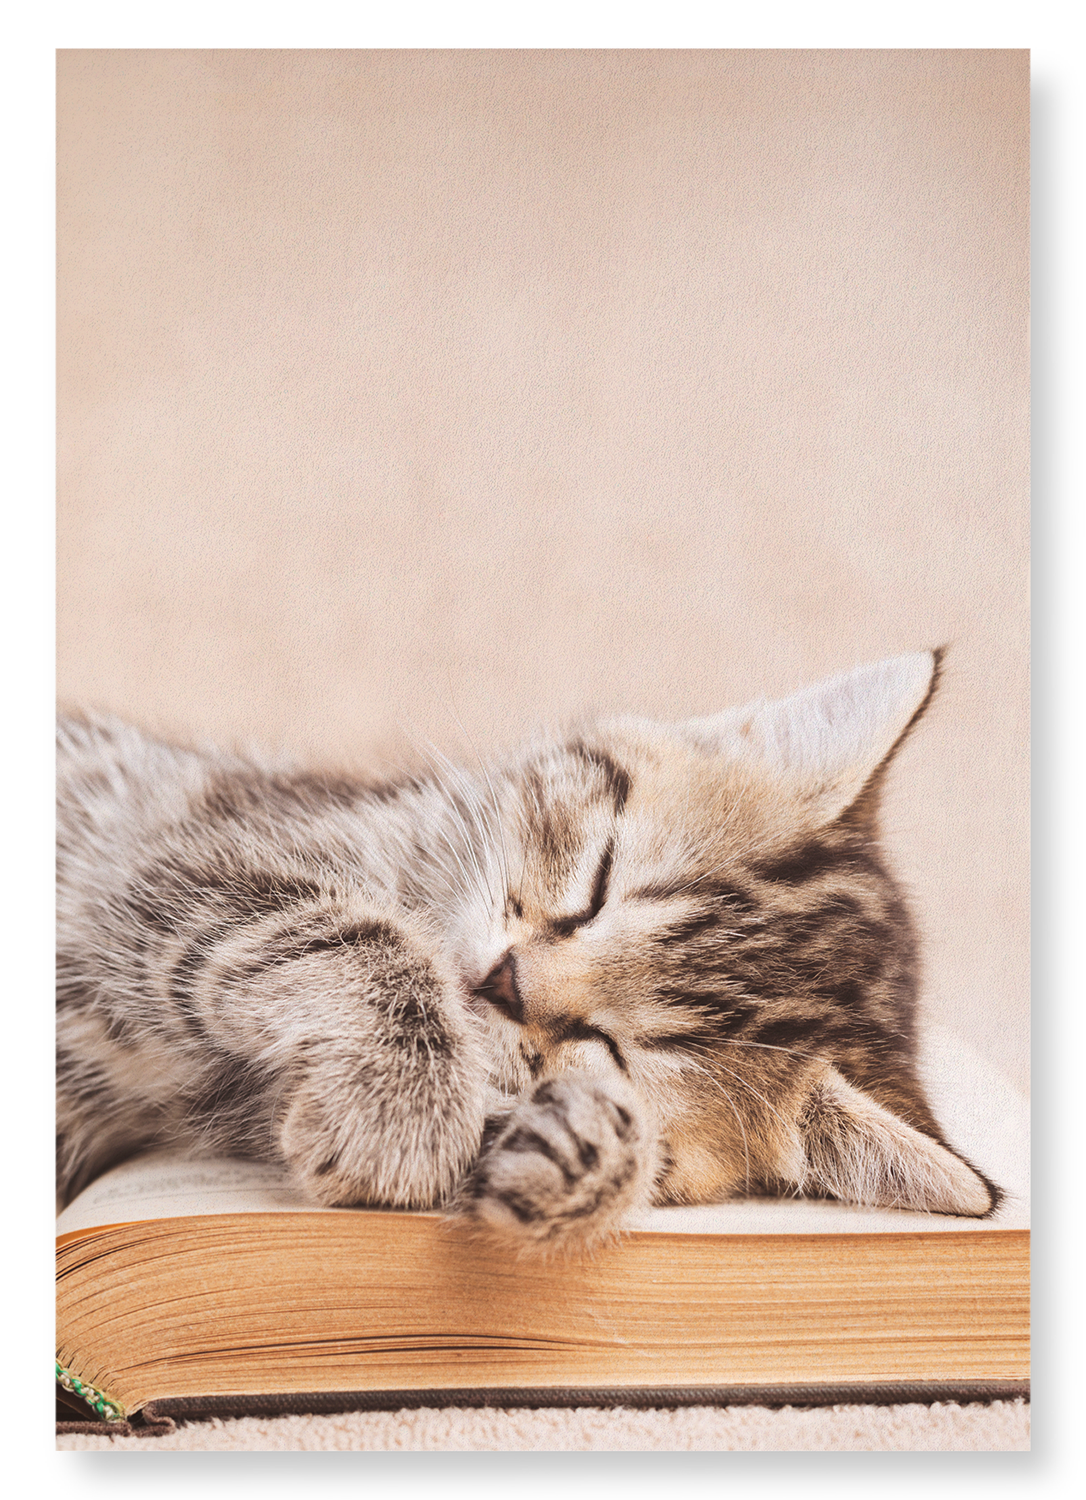 KITTEN SLEEPING ON A BOOK